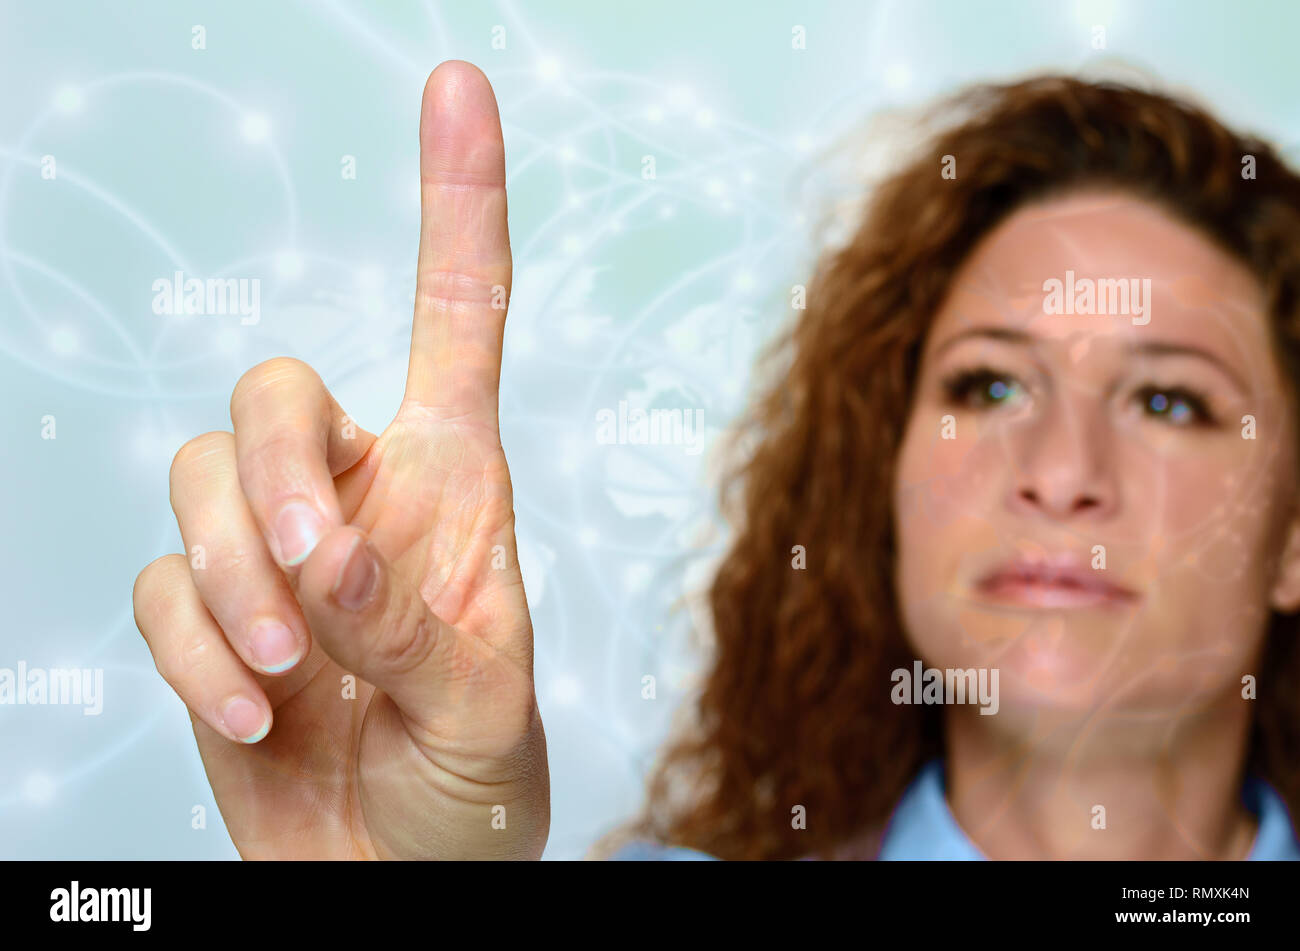 Une femme ayant atteint avec un doigt pour toucher un écran ou une interface virtuelle, Close up de sa main avec son visage alors qu'un flou derrière Banque D'Images